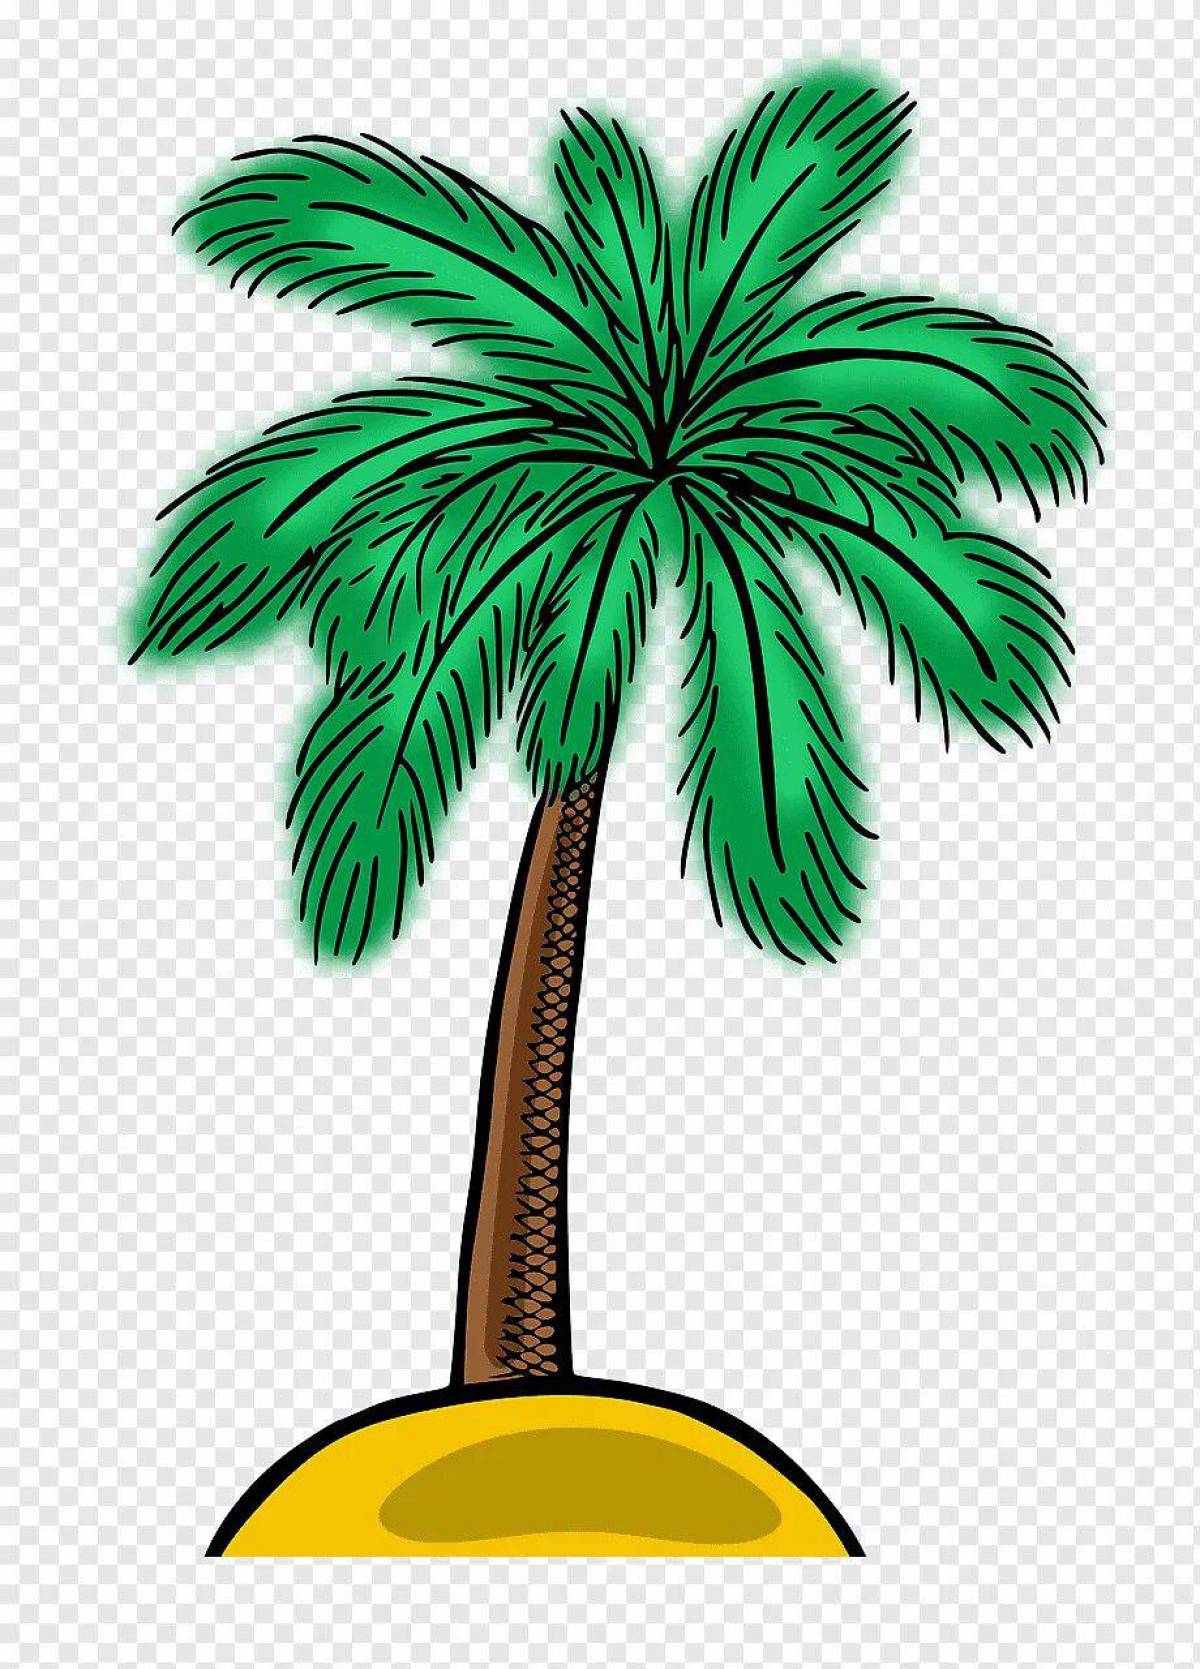 Пальма букв и звуков. Пальма. Пальма иллюстрация. Пальма для детей. Изображение пальмы.